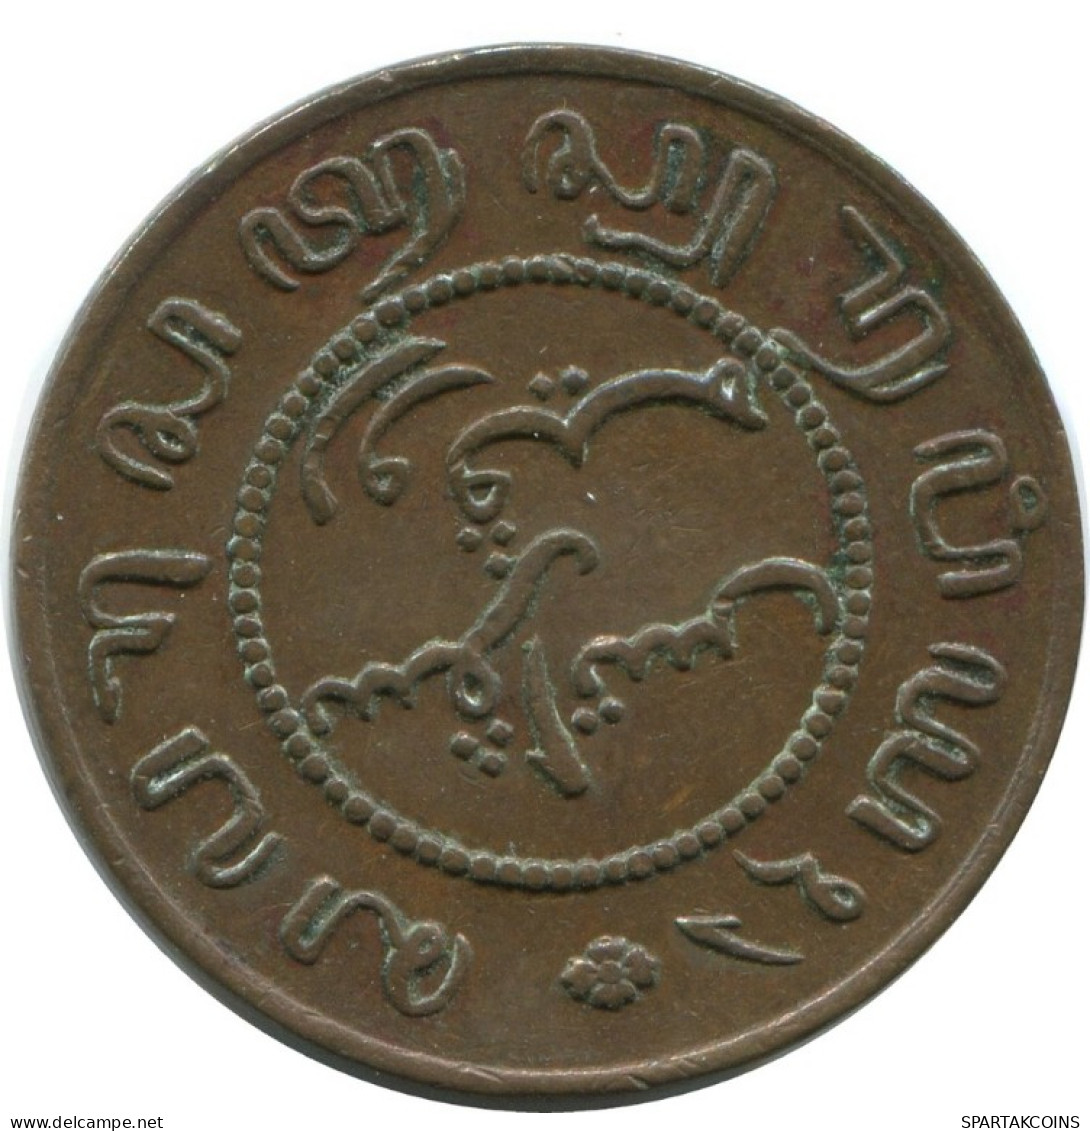 1857 1 CENT INDIAS ORIENTALES DE LOS PAÍSES BAJOS #AE847.27.E.A - Indes Neerlandesas